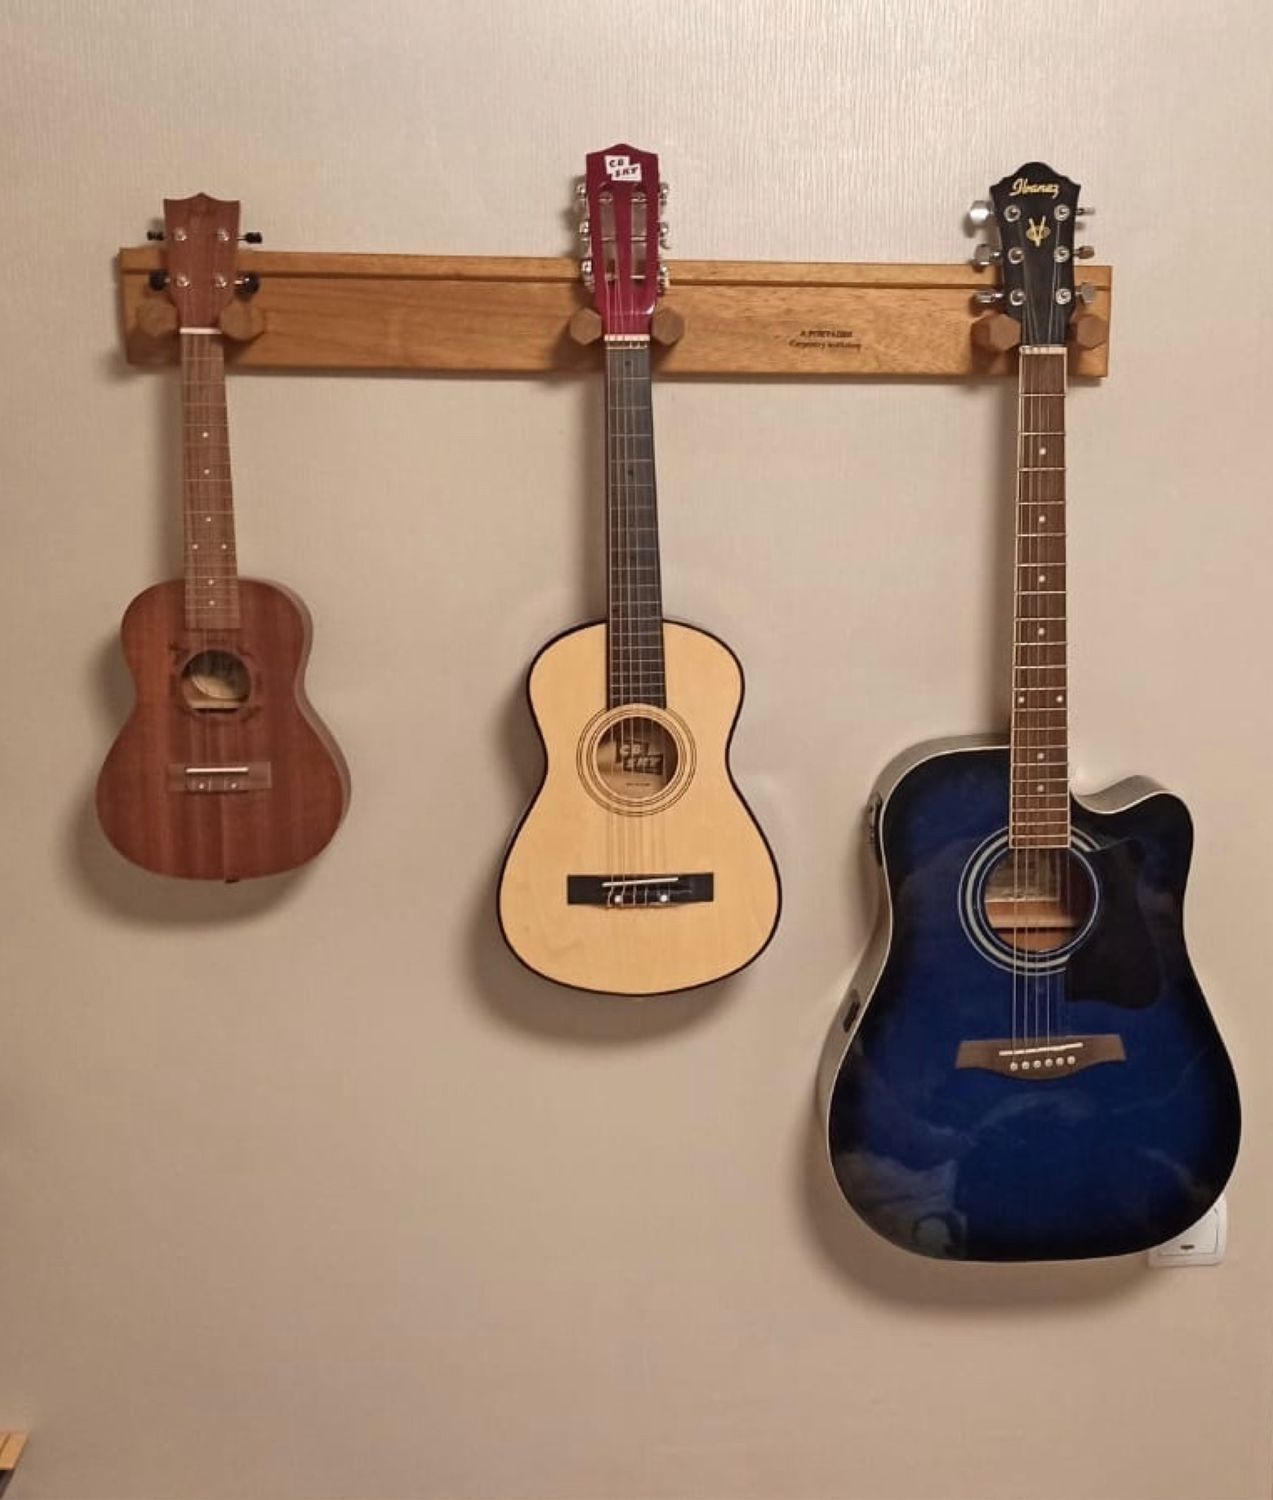 Как повесить гитару на стену - держатель и крепление для гитары на стене